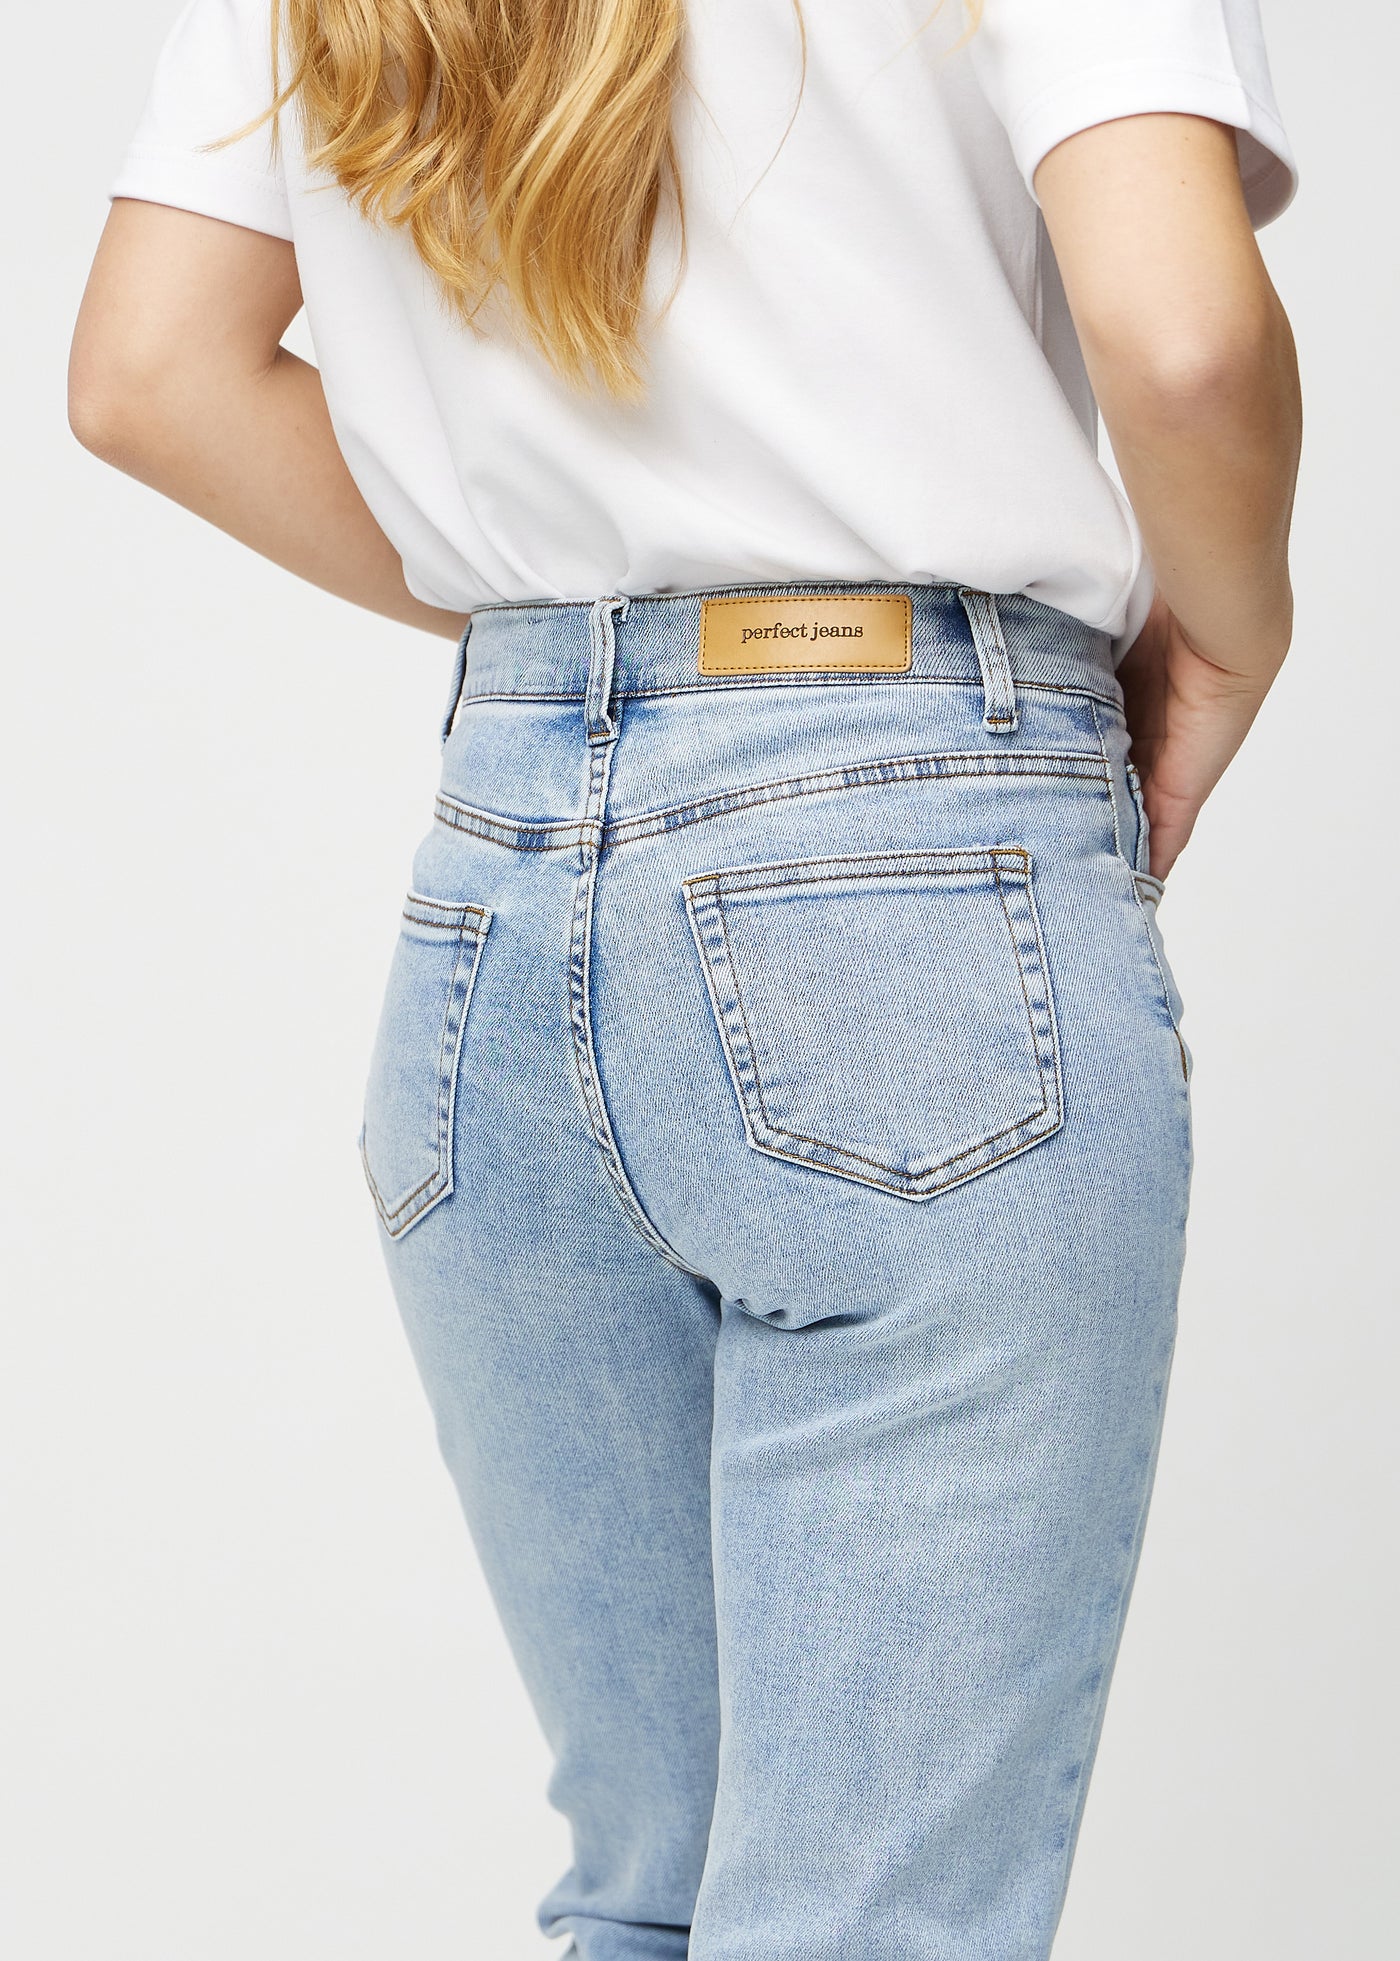 Lys denim regular jeans set bagfra tæt på for at vise detaljer.